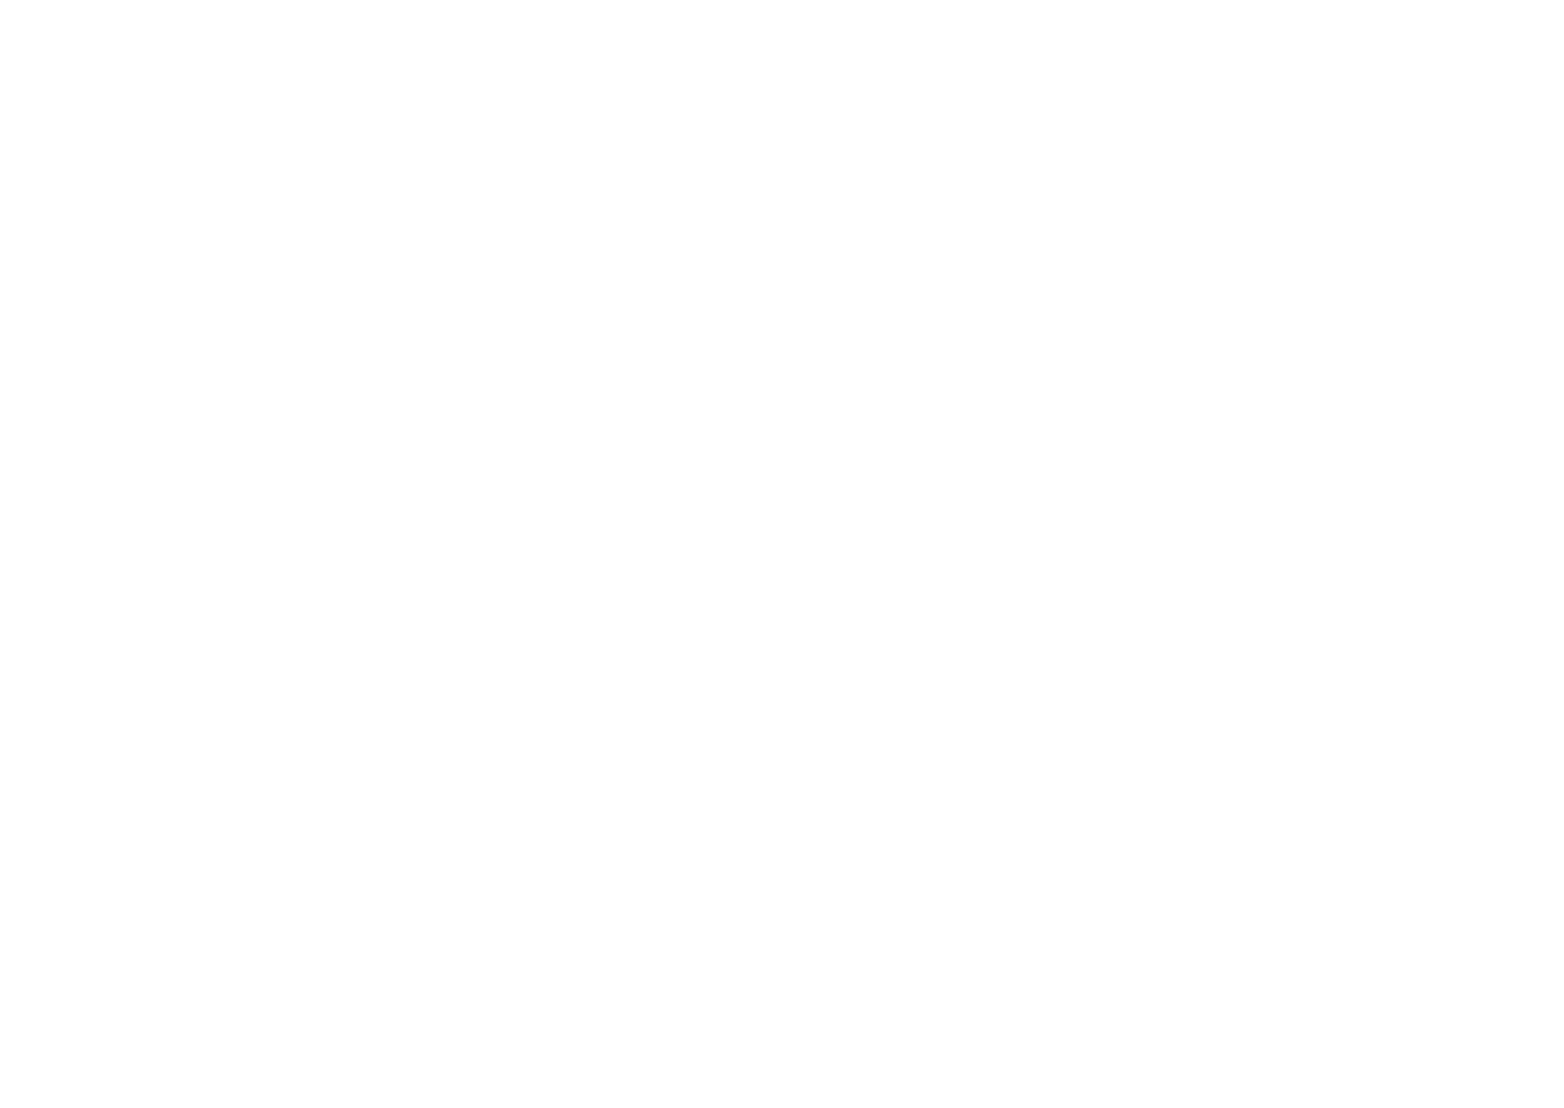 Knorr Bremse Logo, SVG